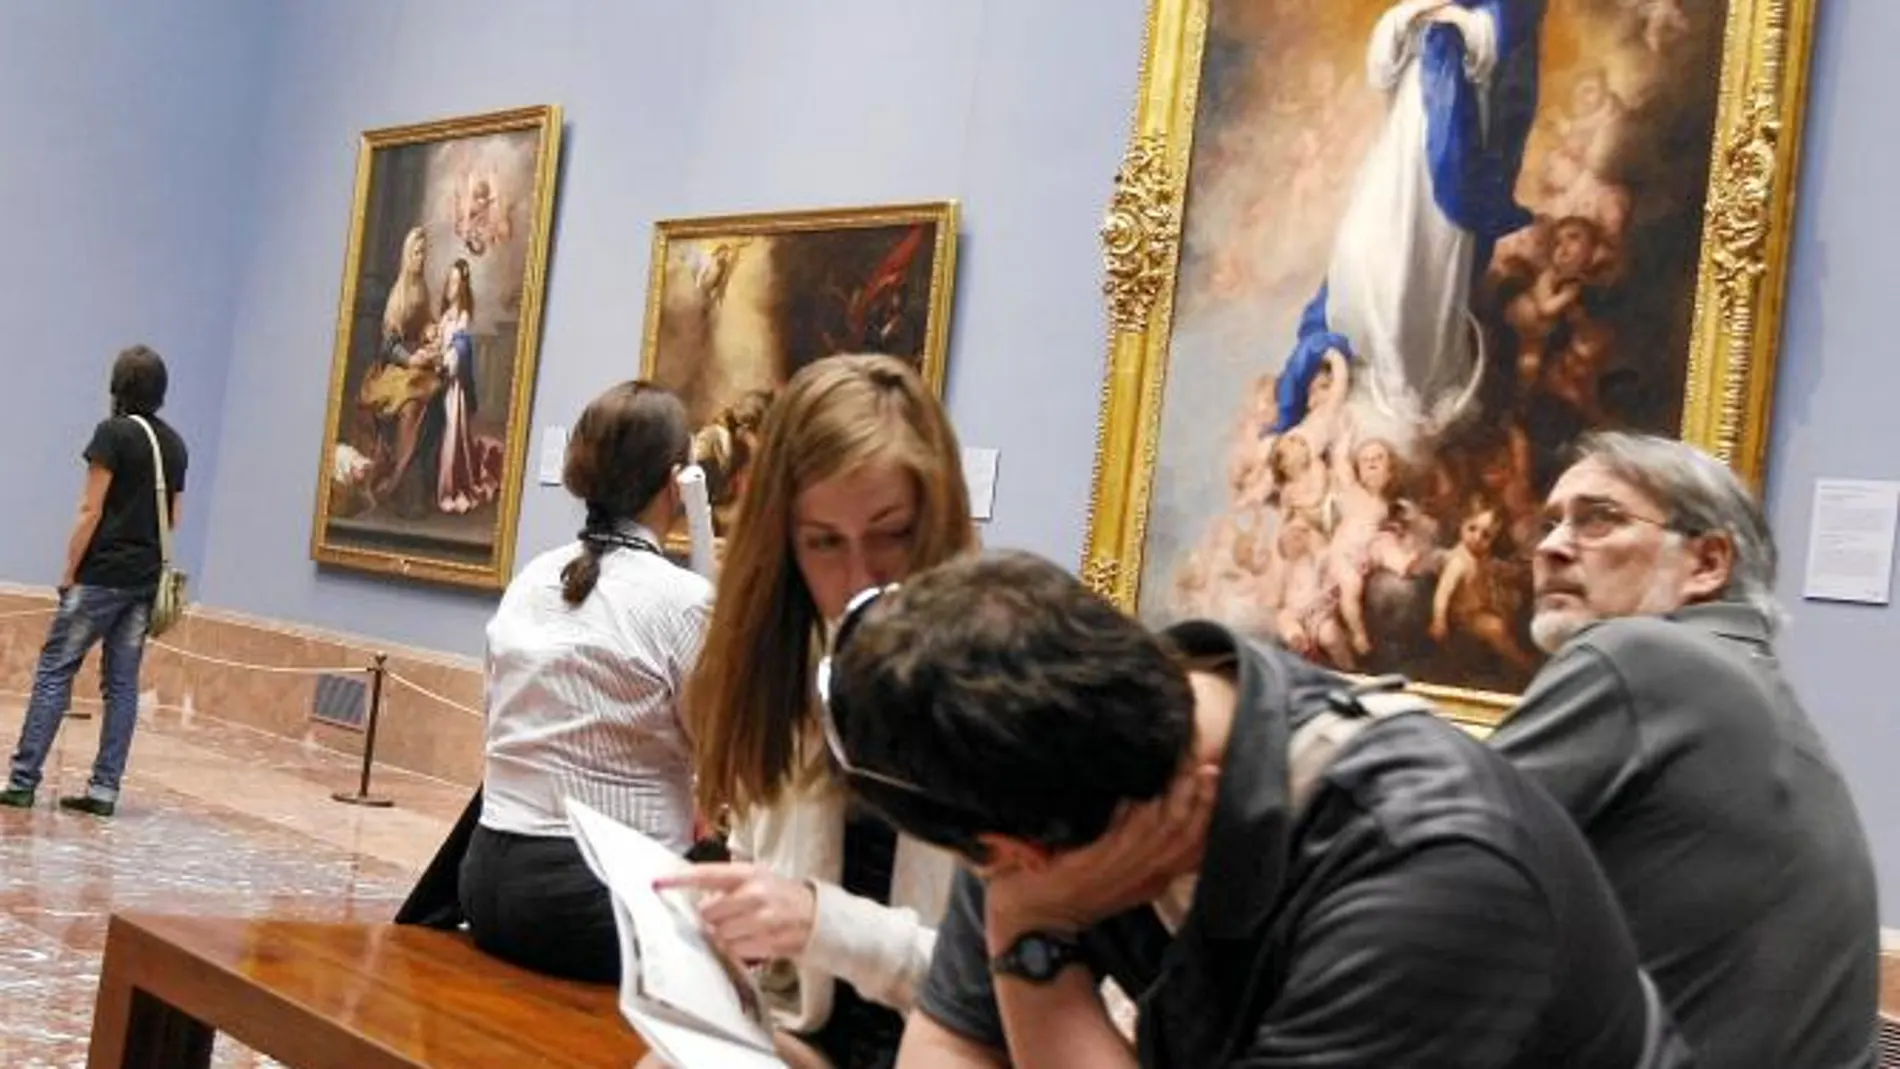 Más público. El Prado aumentará el número de visitantes al abrir 53 días más al año